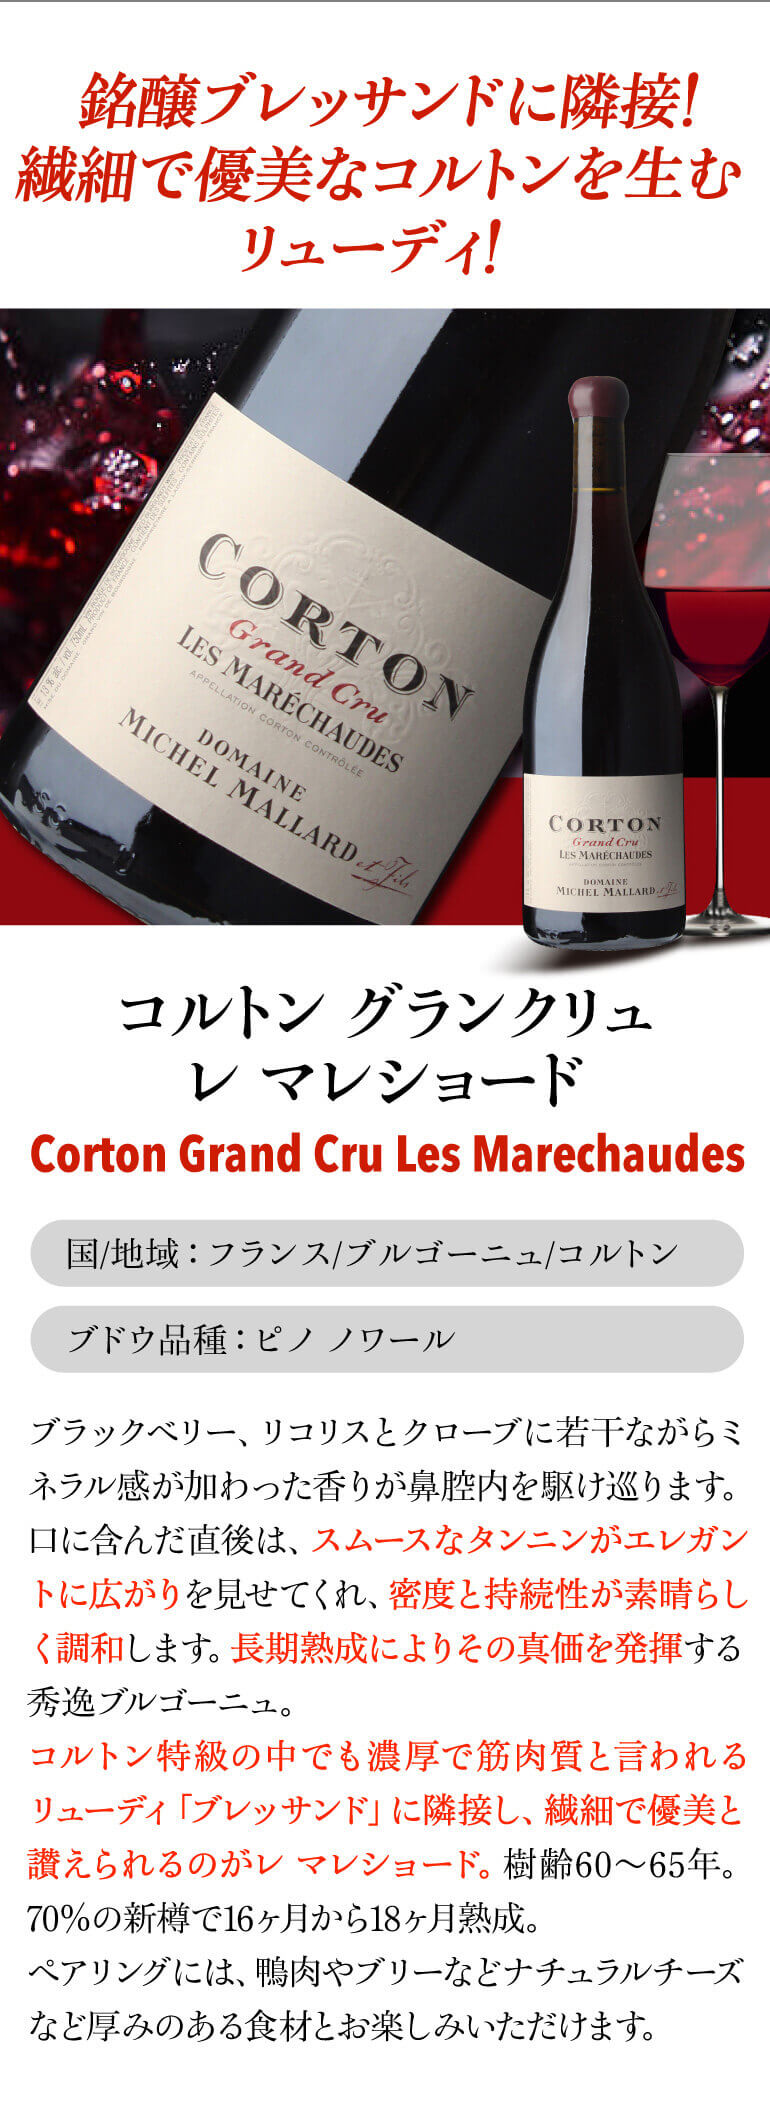 送料無料 赤ワイン コルトン グランクリュ ル ロニエ 2011 ミッシェル